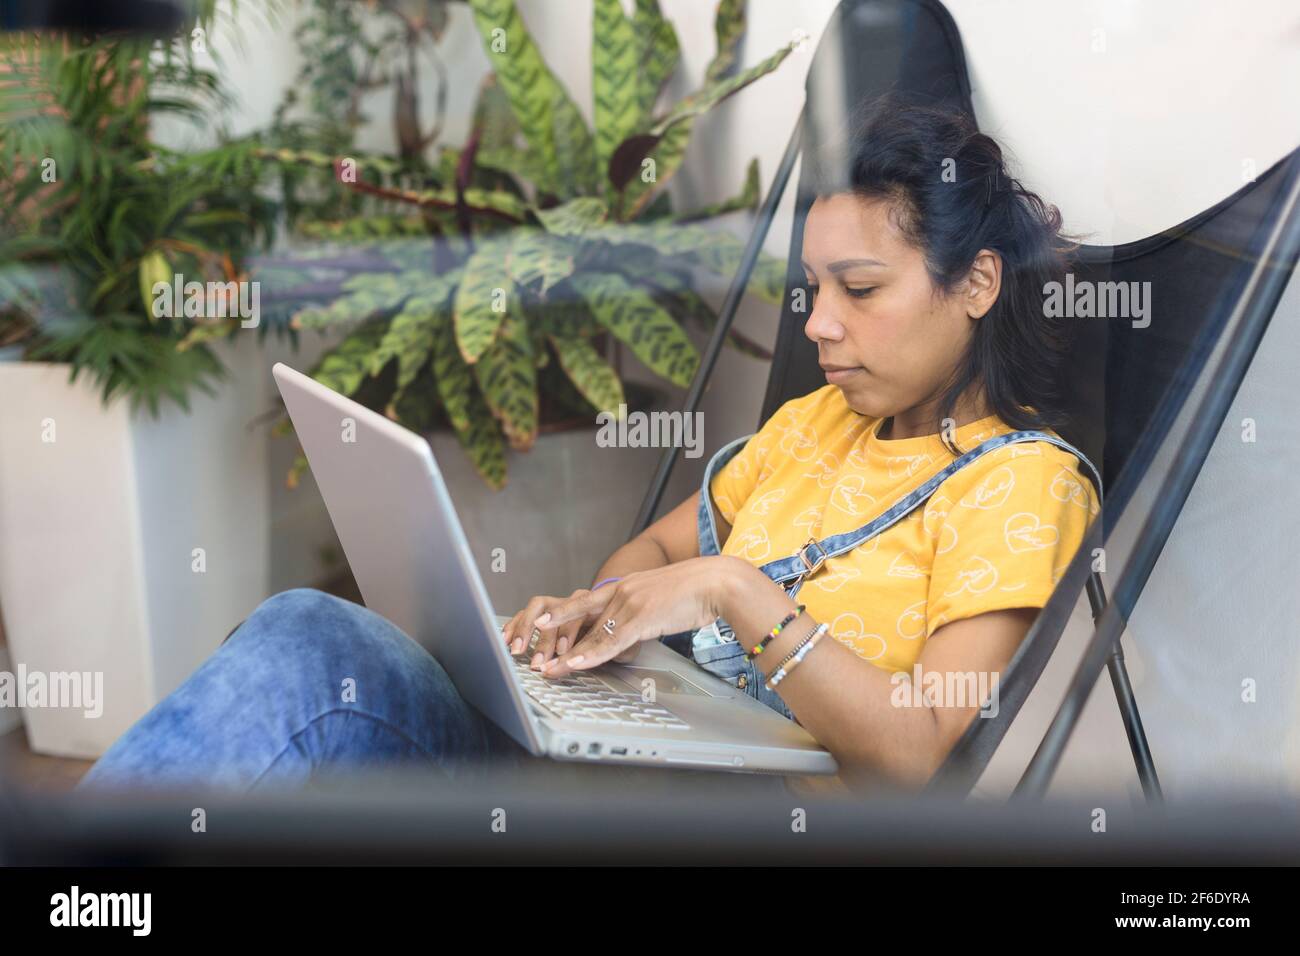 Vue franche d'une jeune femme hispanique travaillant avec son ordinateur portable de chez elle. Espace pour le texte. Banque D'Images